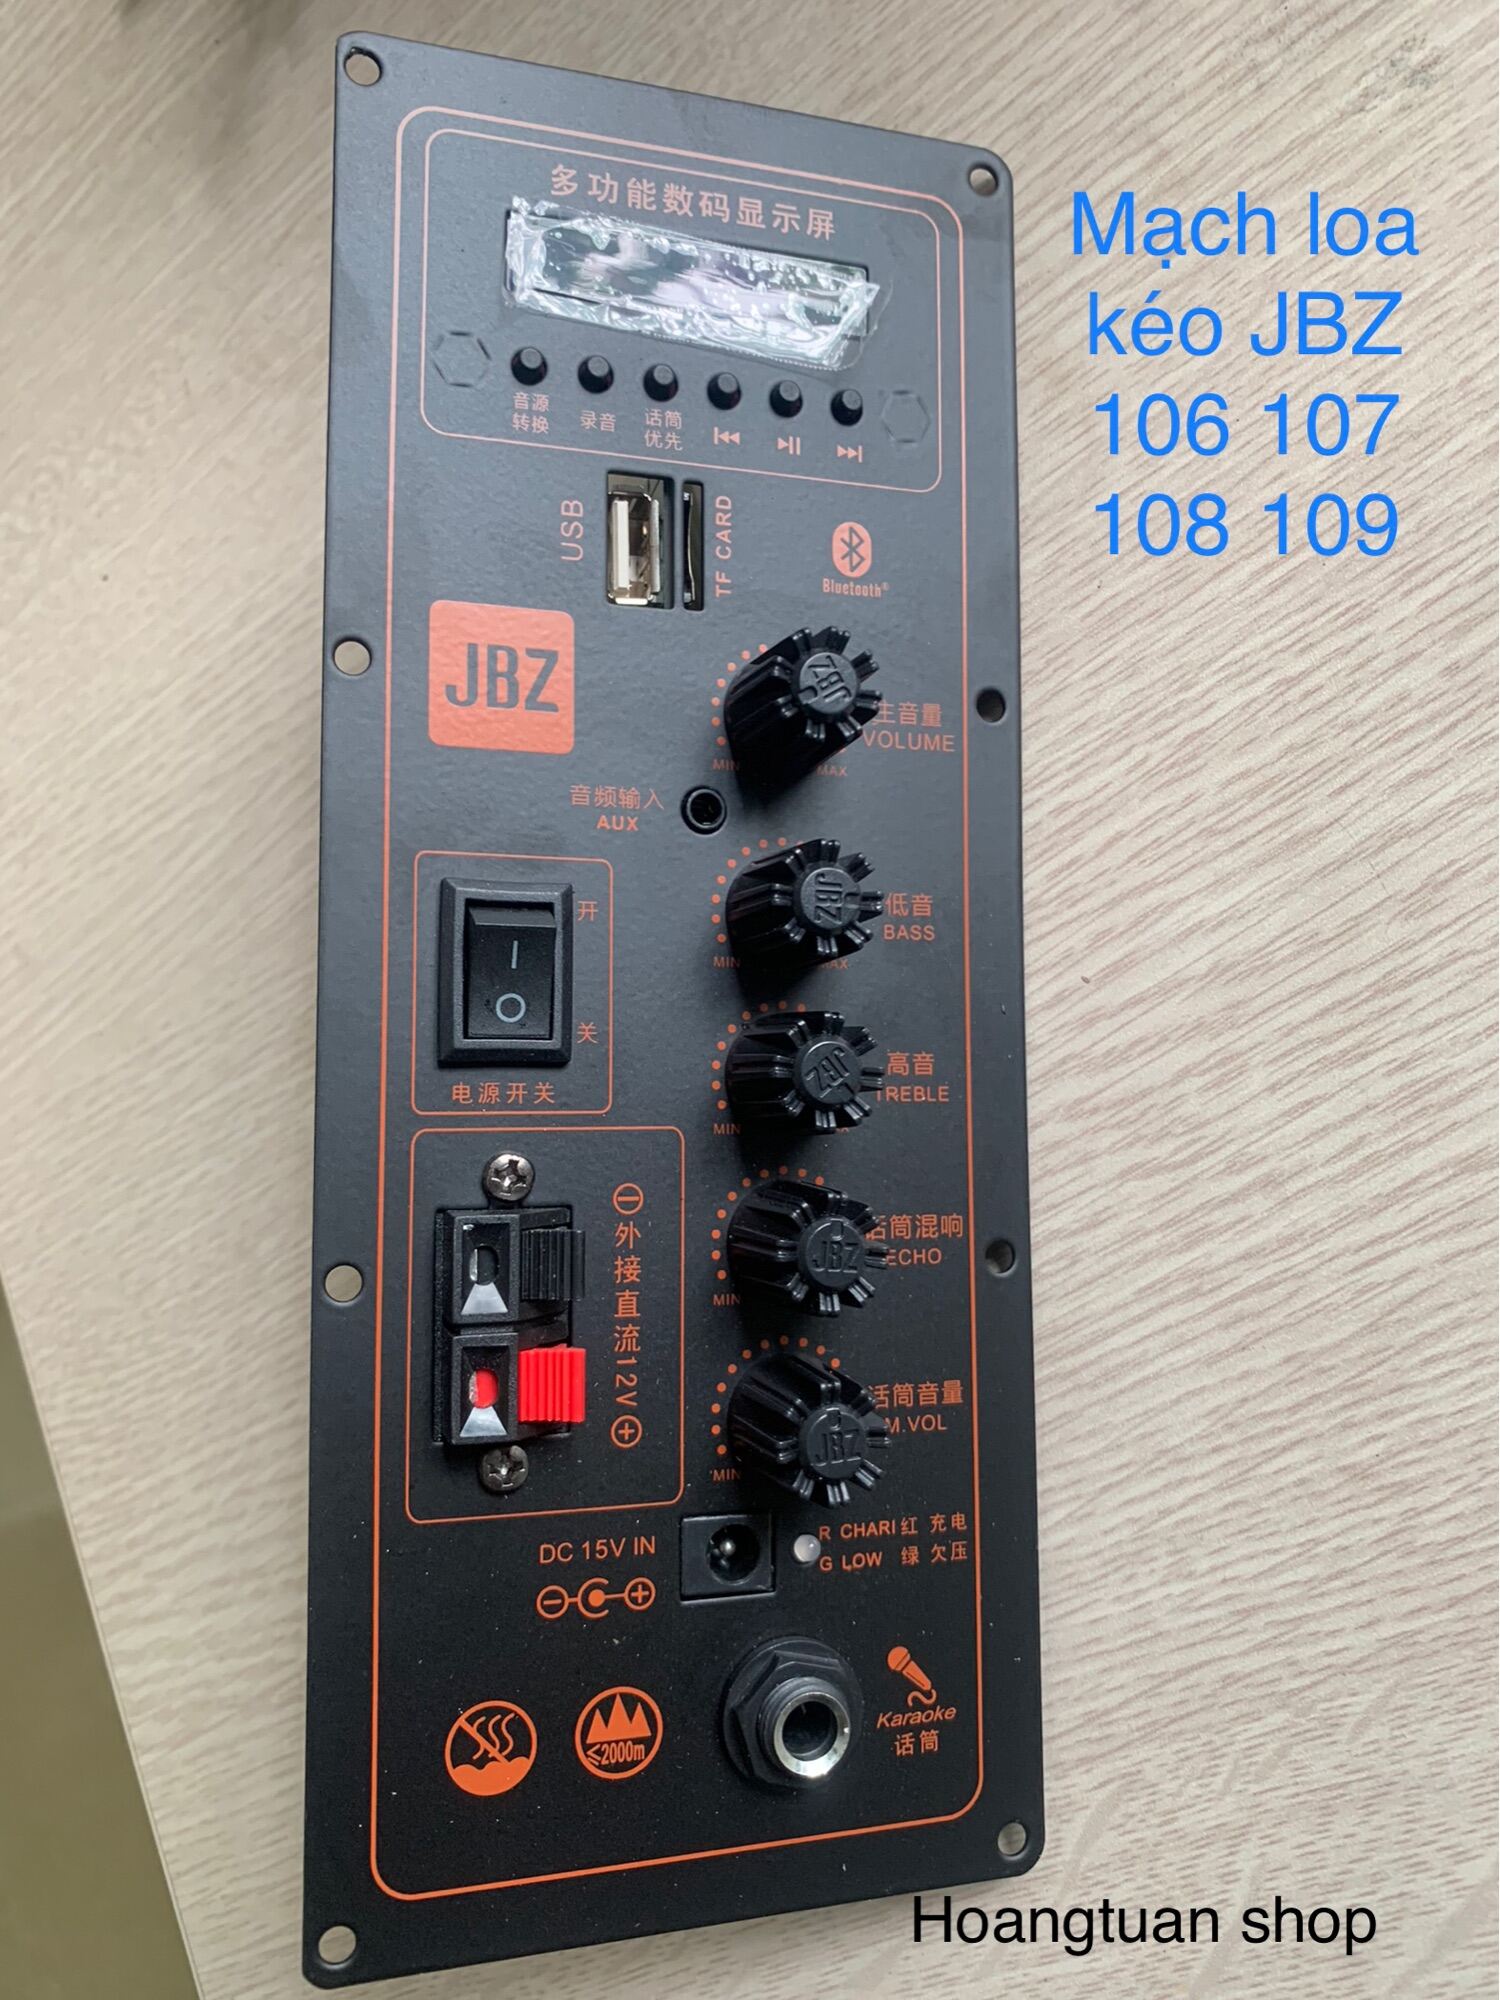 Bo mạch loa kéo Jbz 106 107 108 109 ( không bao gồm mạch mic)